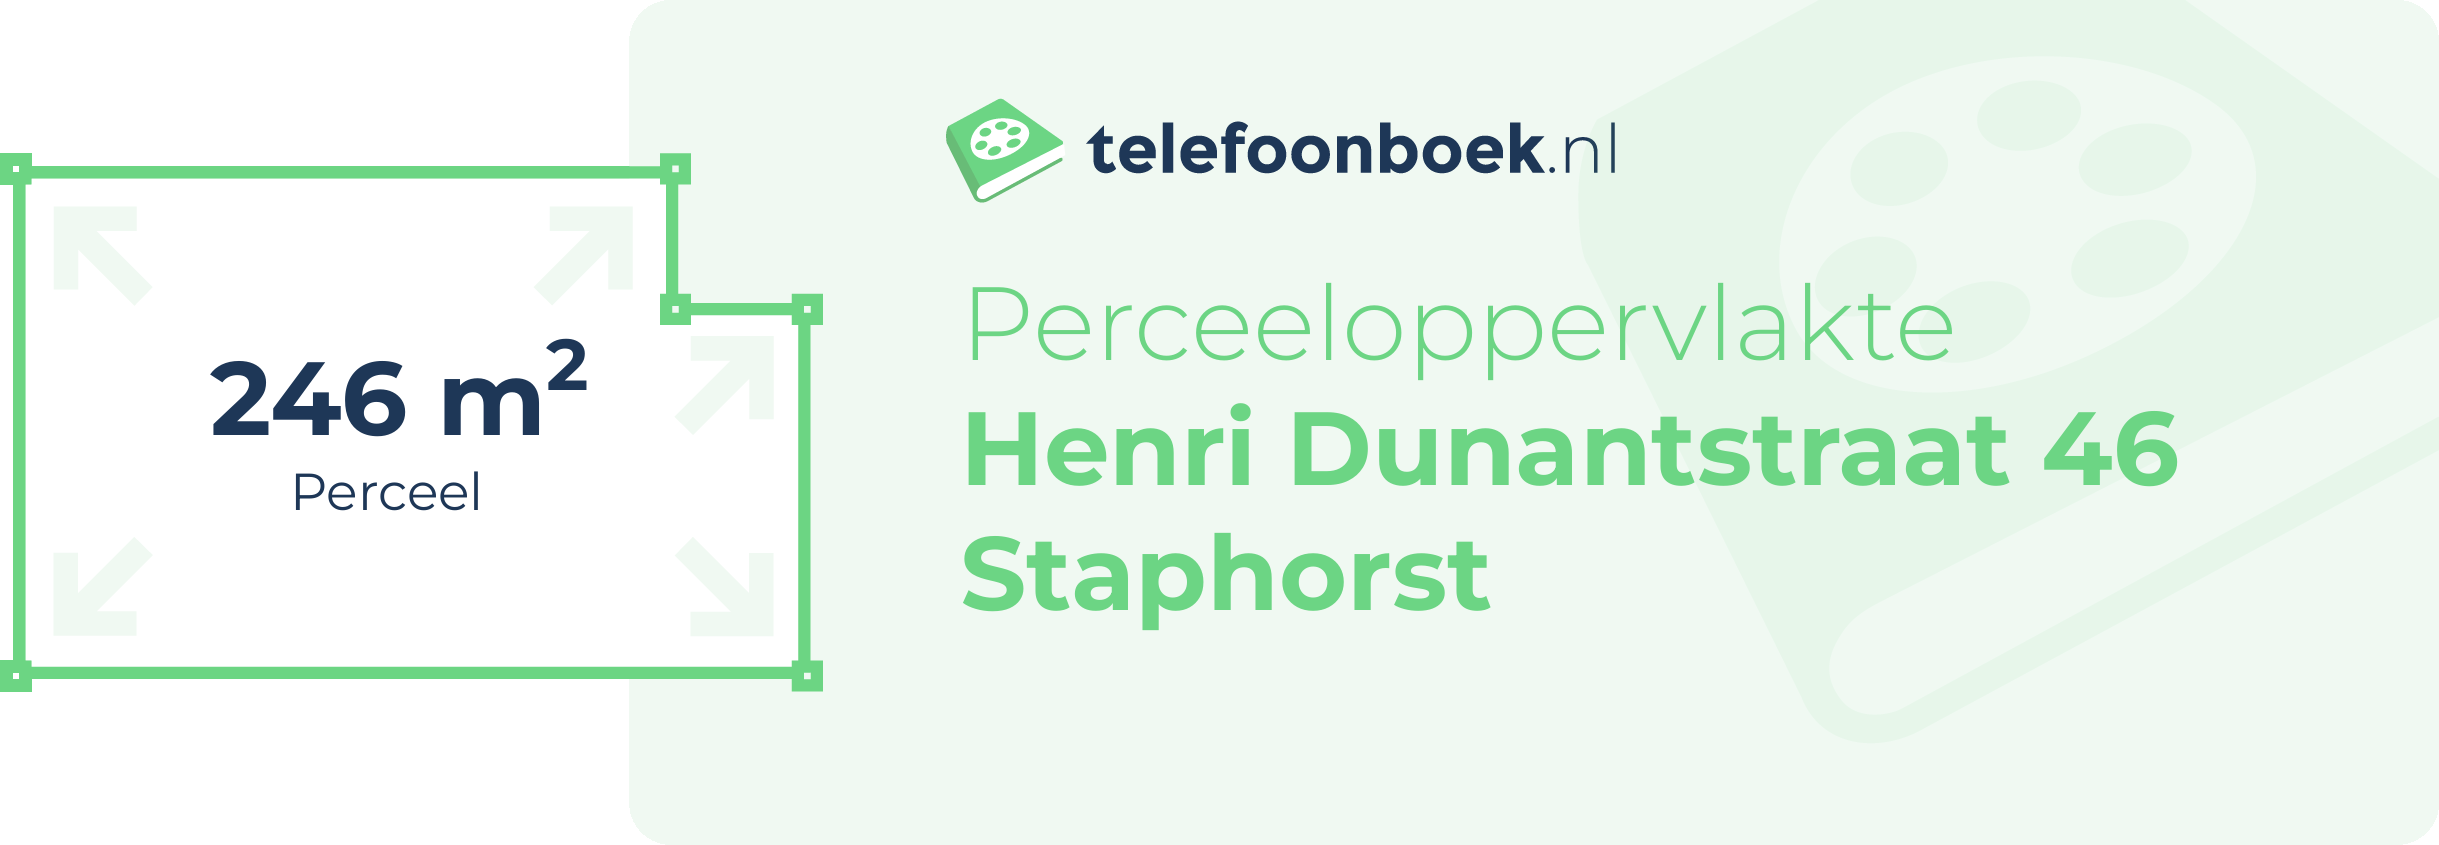 Perceeloppervlakte Henri Dunantstraat 46 Staphorst